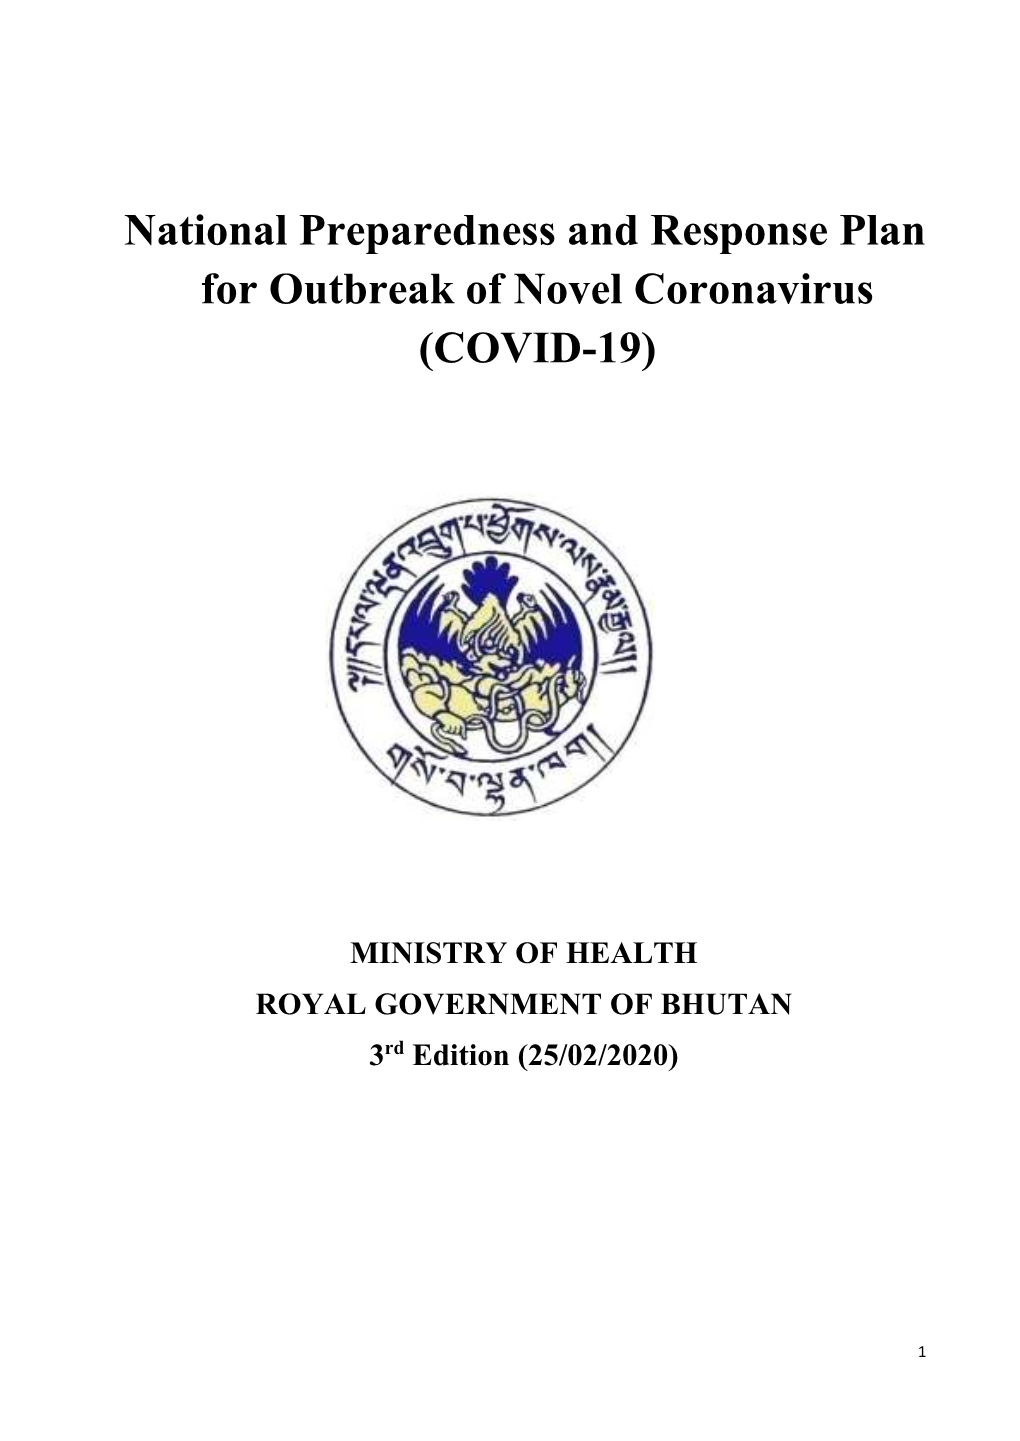 National Preparedness and Response Plan for Outbreak of Novel Coronavirus (COVID-19)